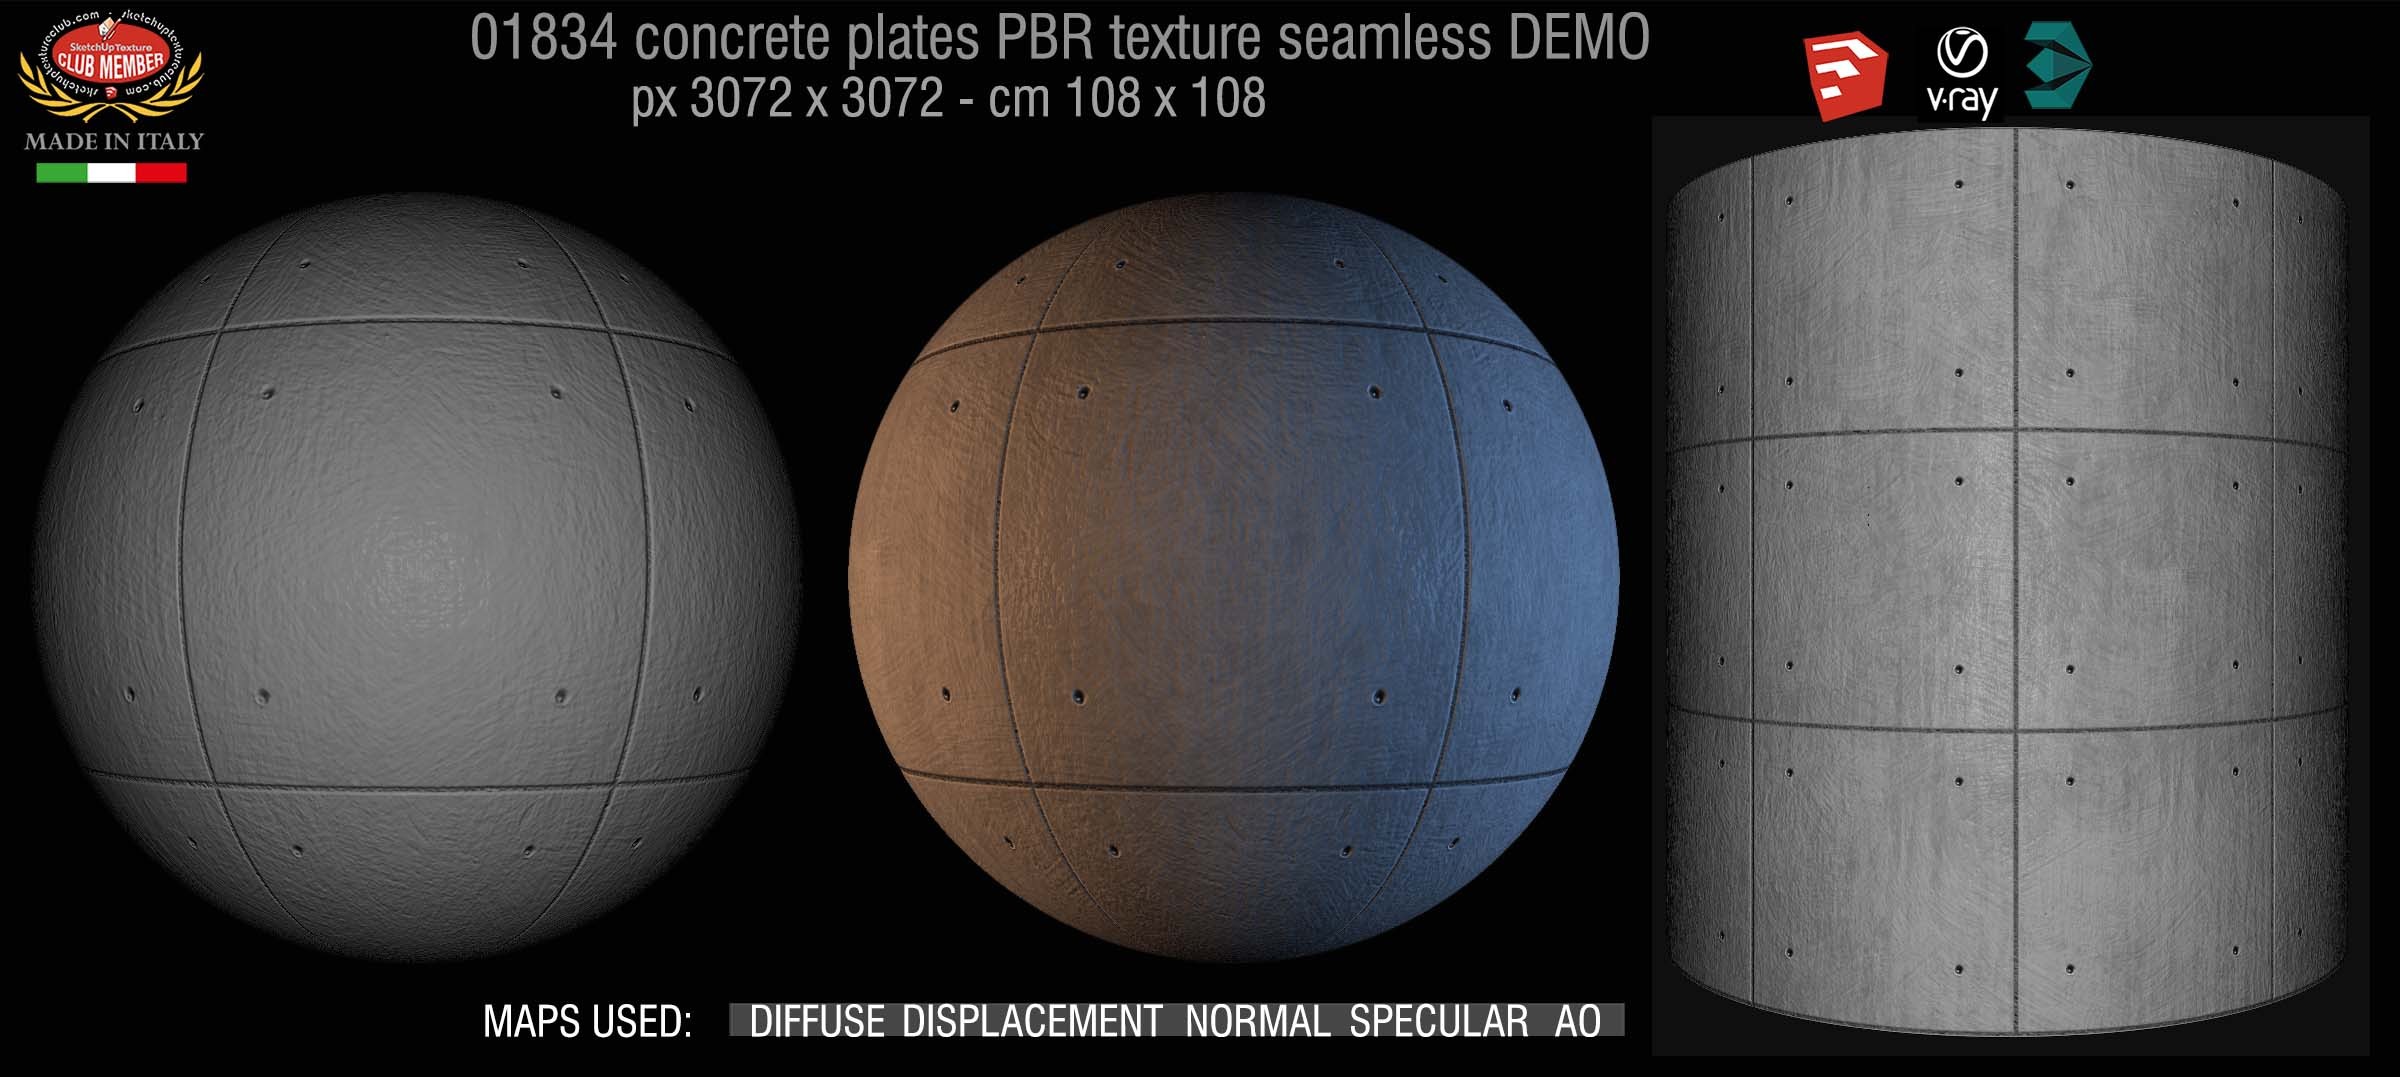 01834 Tadao Ando concrete plates PBR texture seamless DEMO